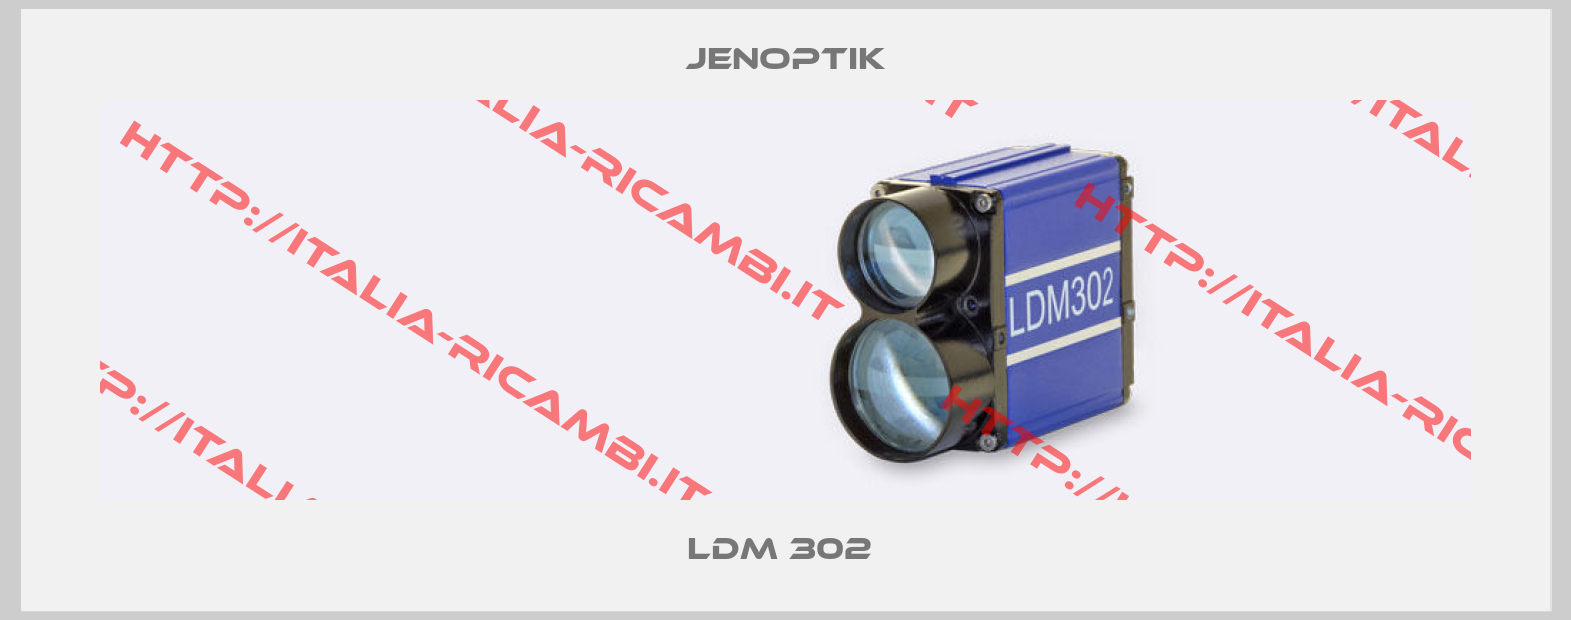 Jenoptik-LDM 302 